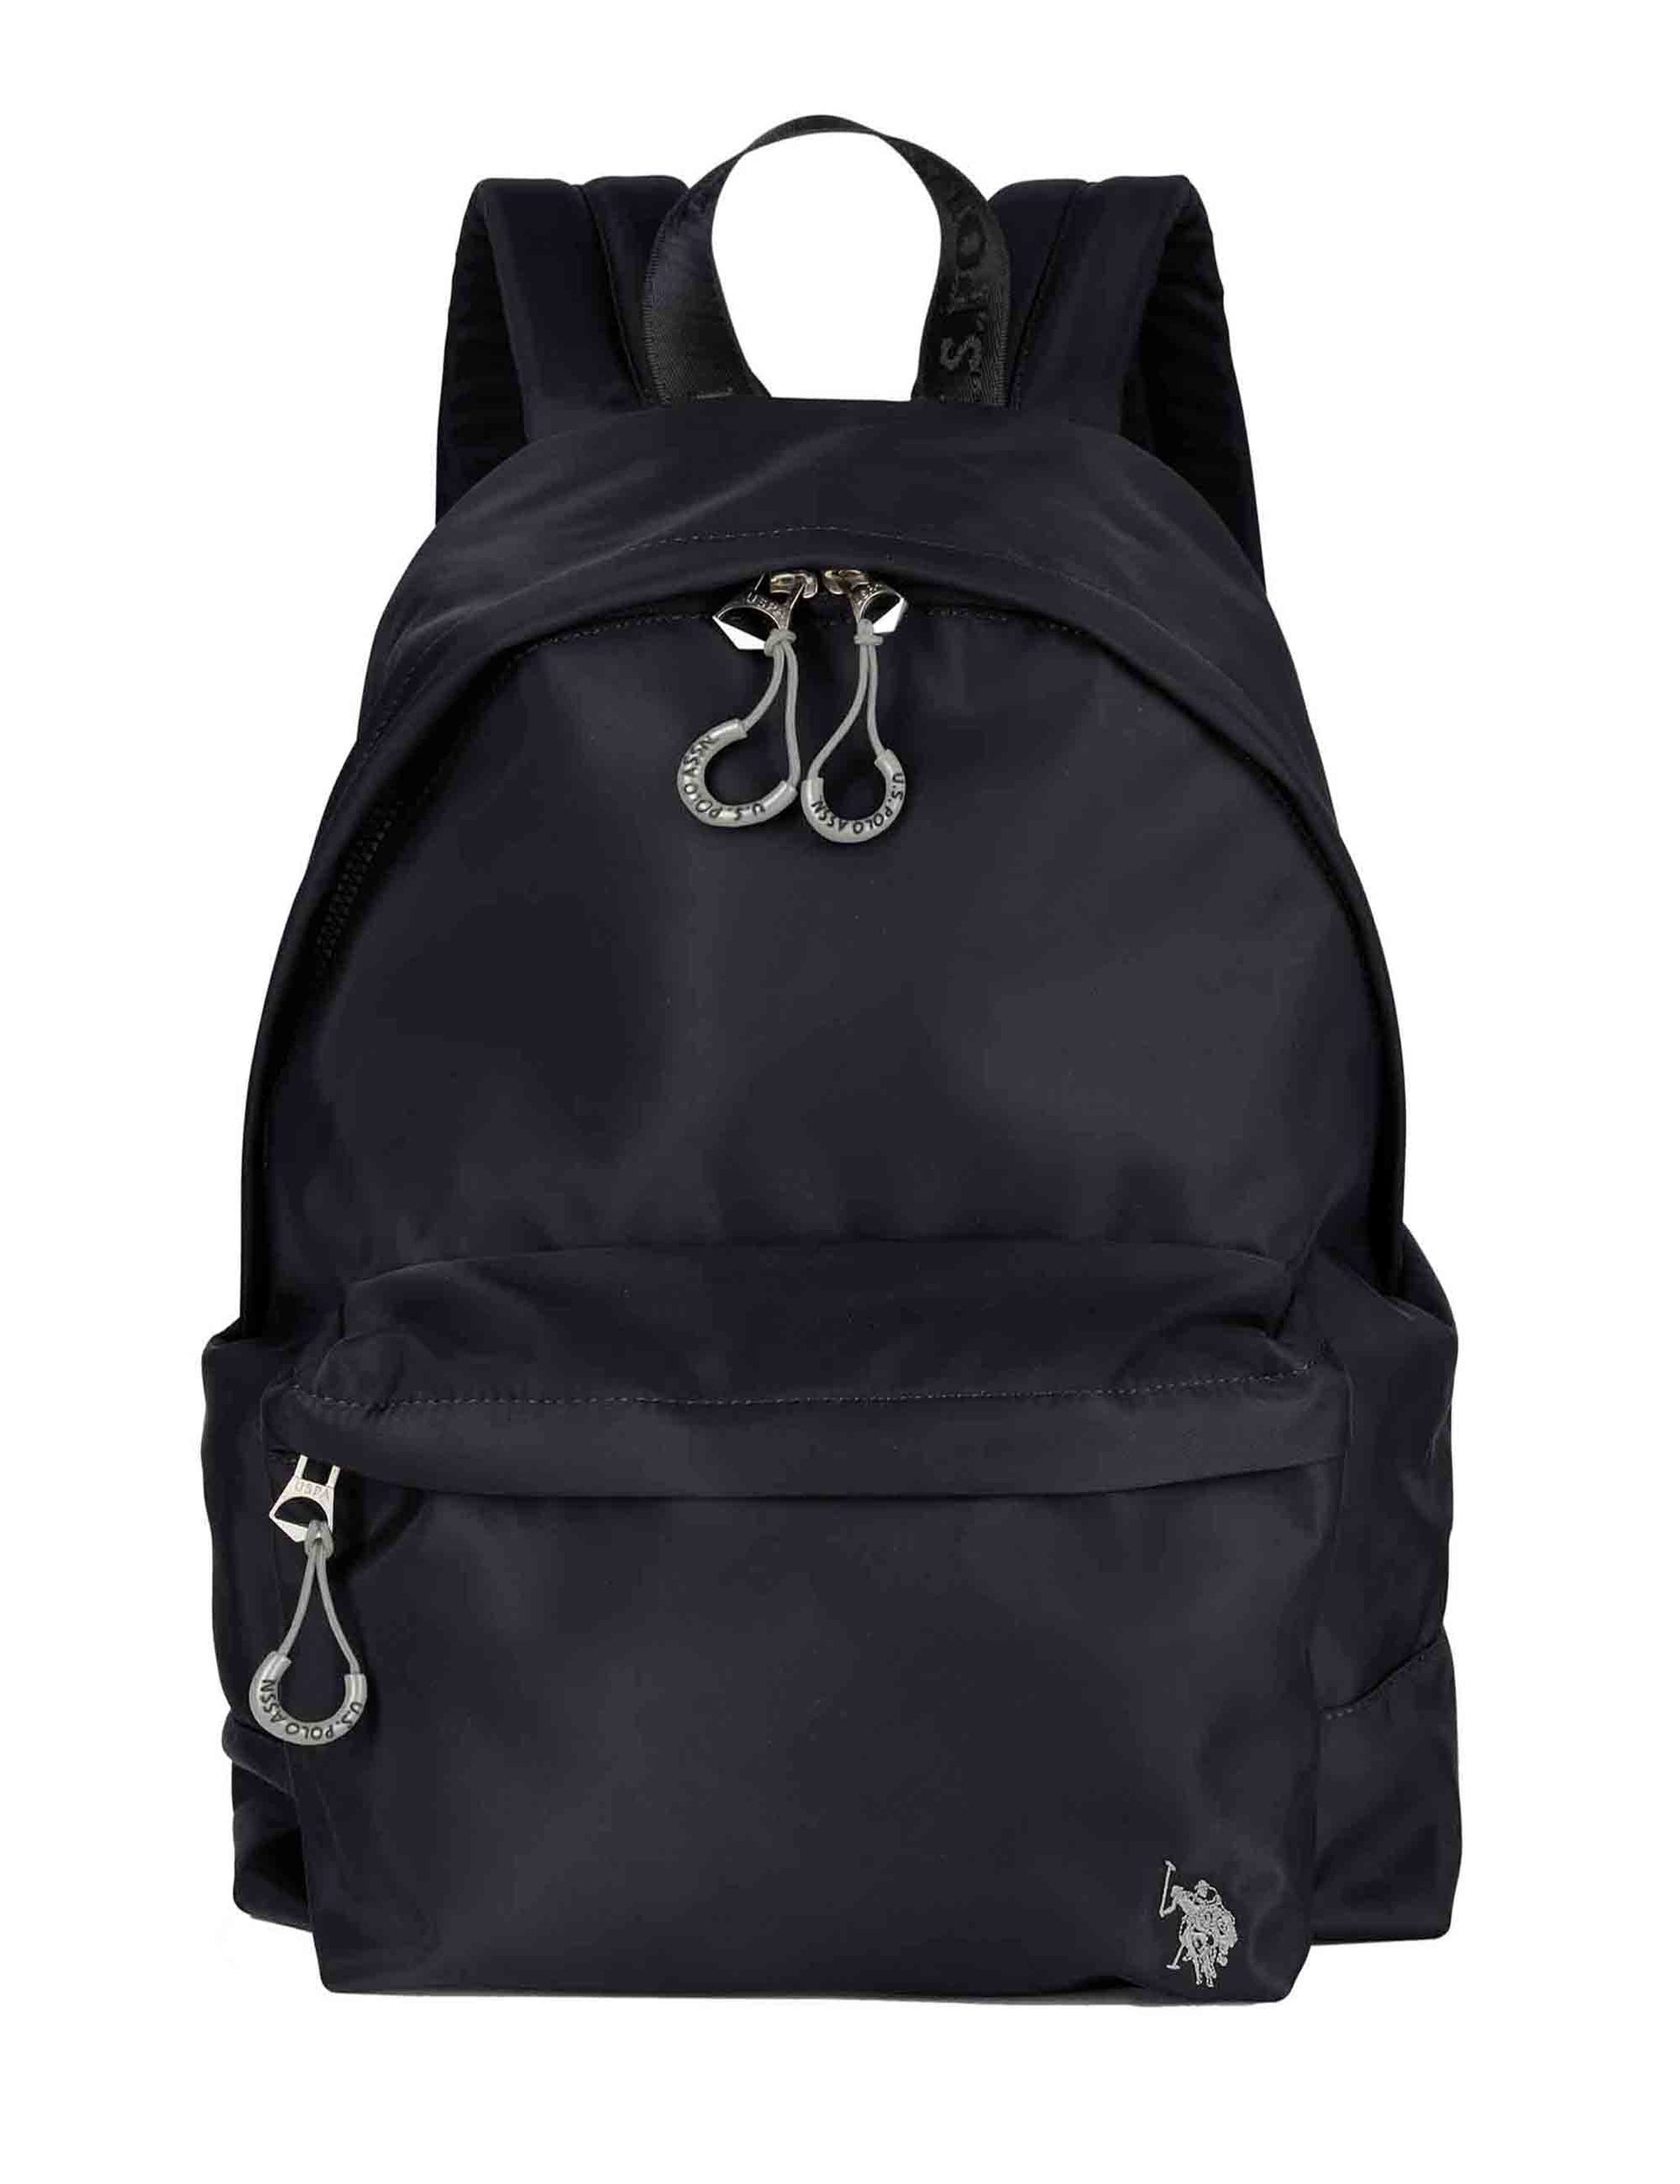 Bigfork men's backpacks in black nylon